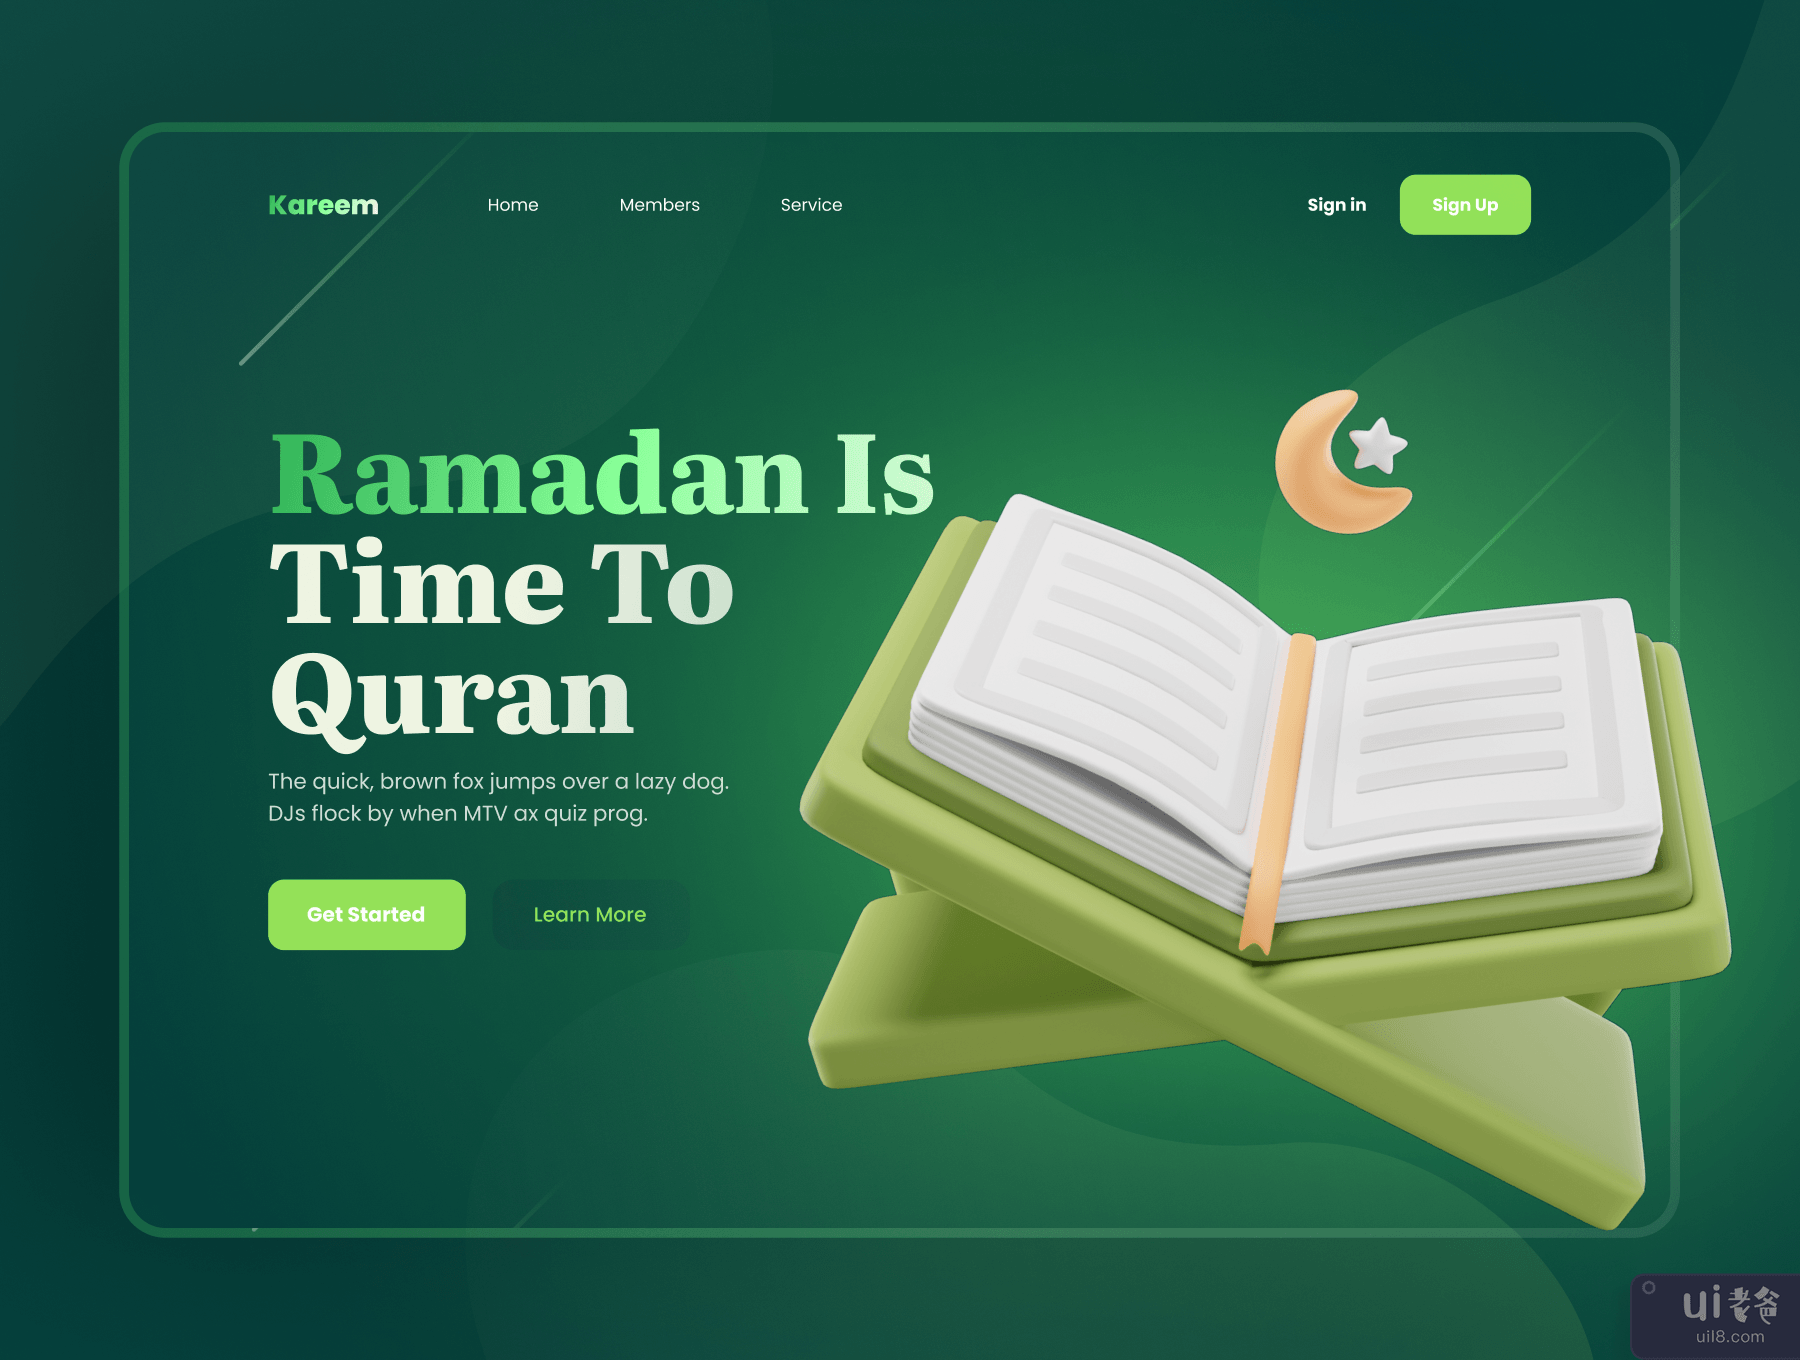 Islamy - 伊斯兰教和斋月 3D 图标集 (Islamy - Islamic & Ramadan 3D Icon Set)插图2